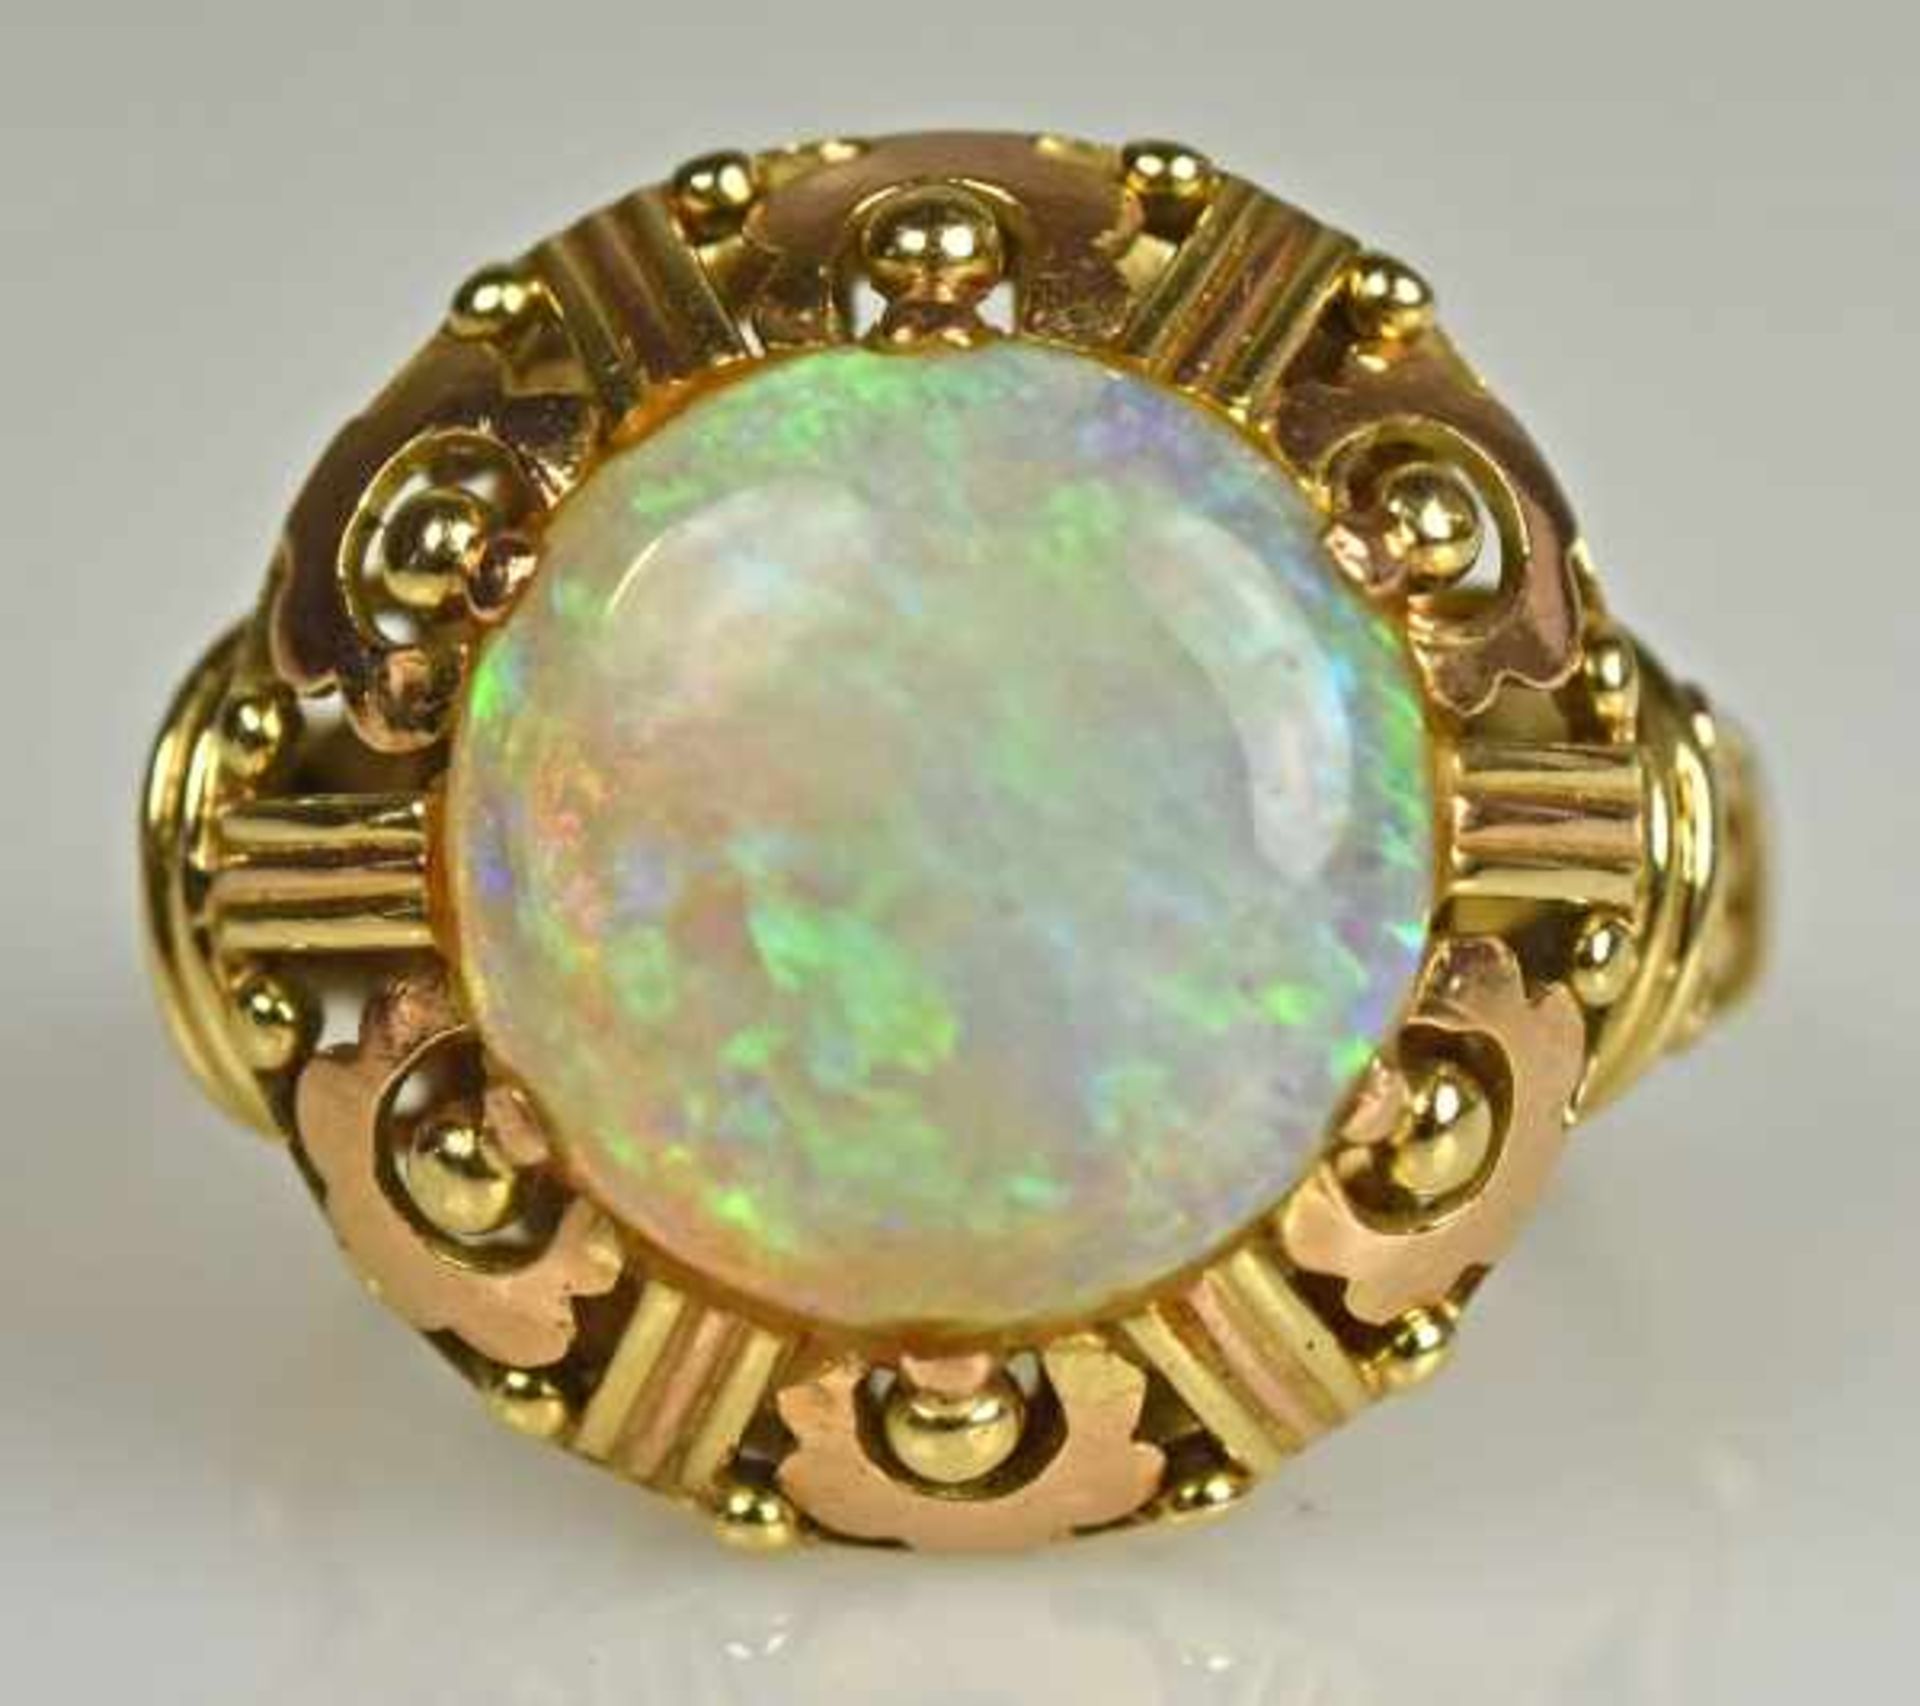 PAAR OPAL-OHRRINGE jeweils besetzt mit rundem Opal mit schönem Farbspektrum, in seitlich